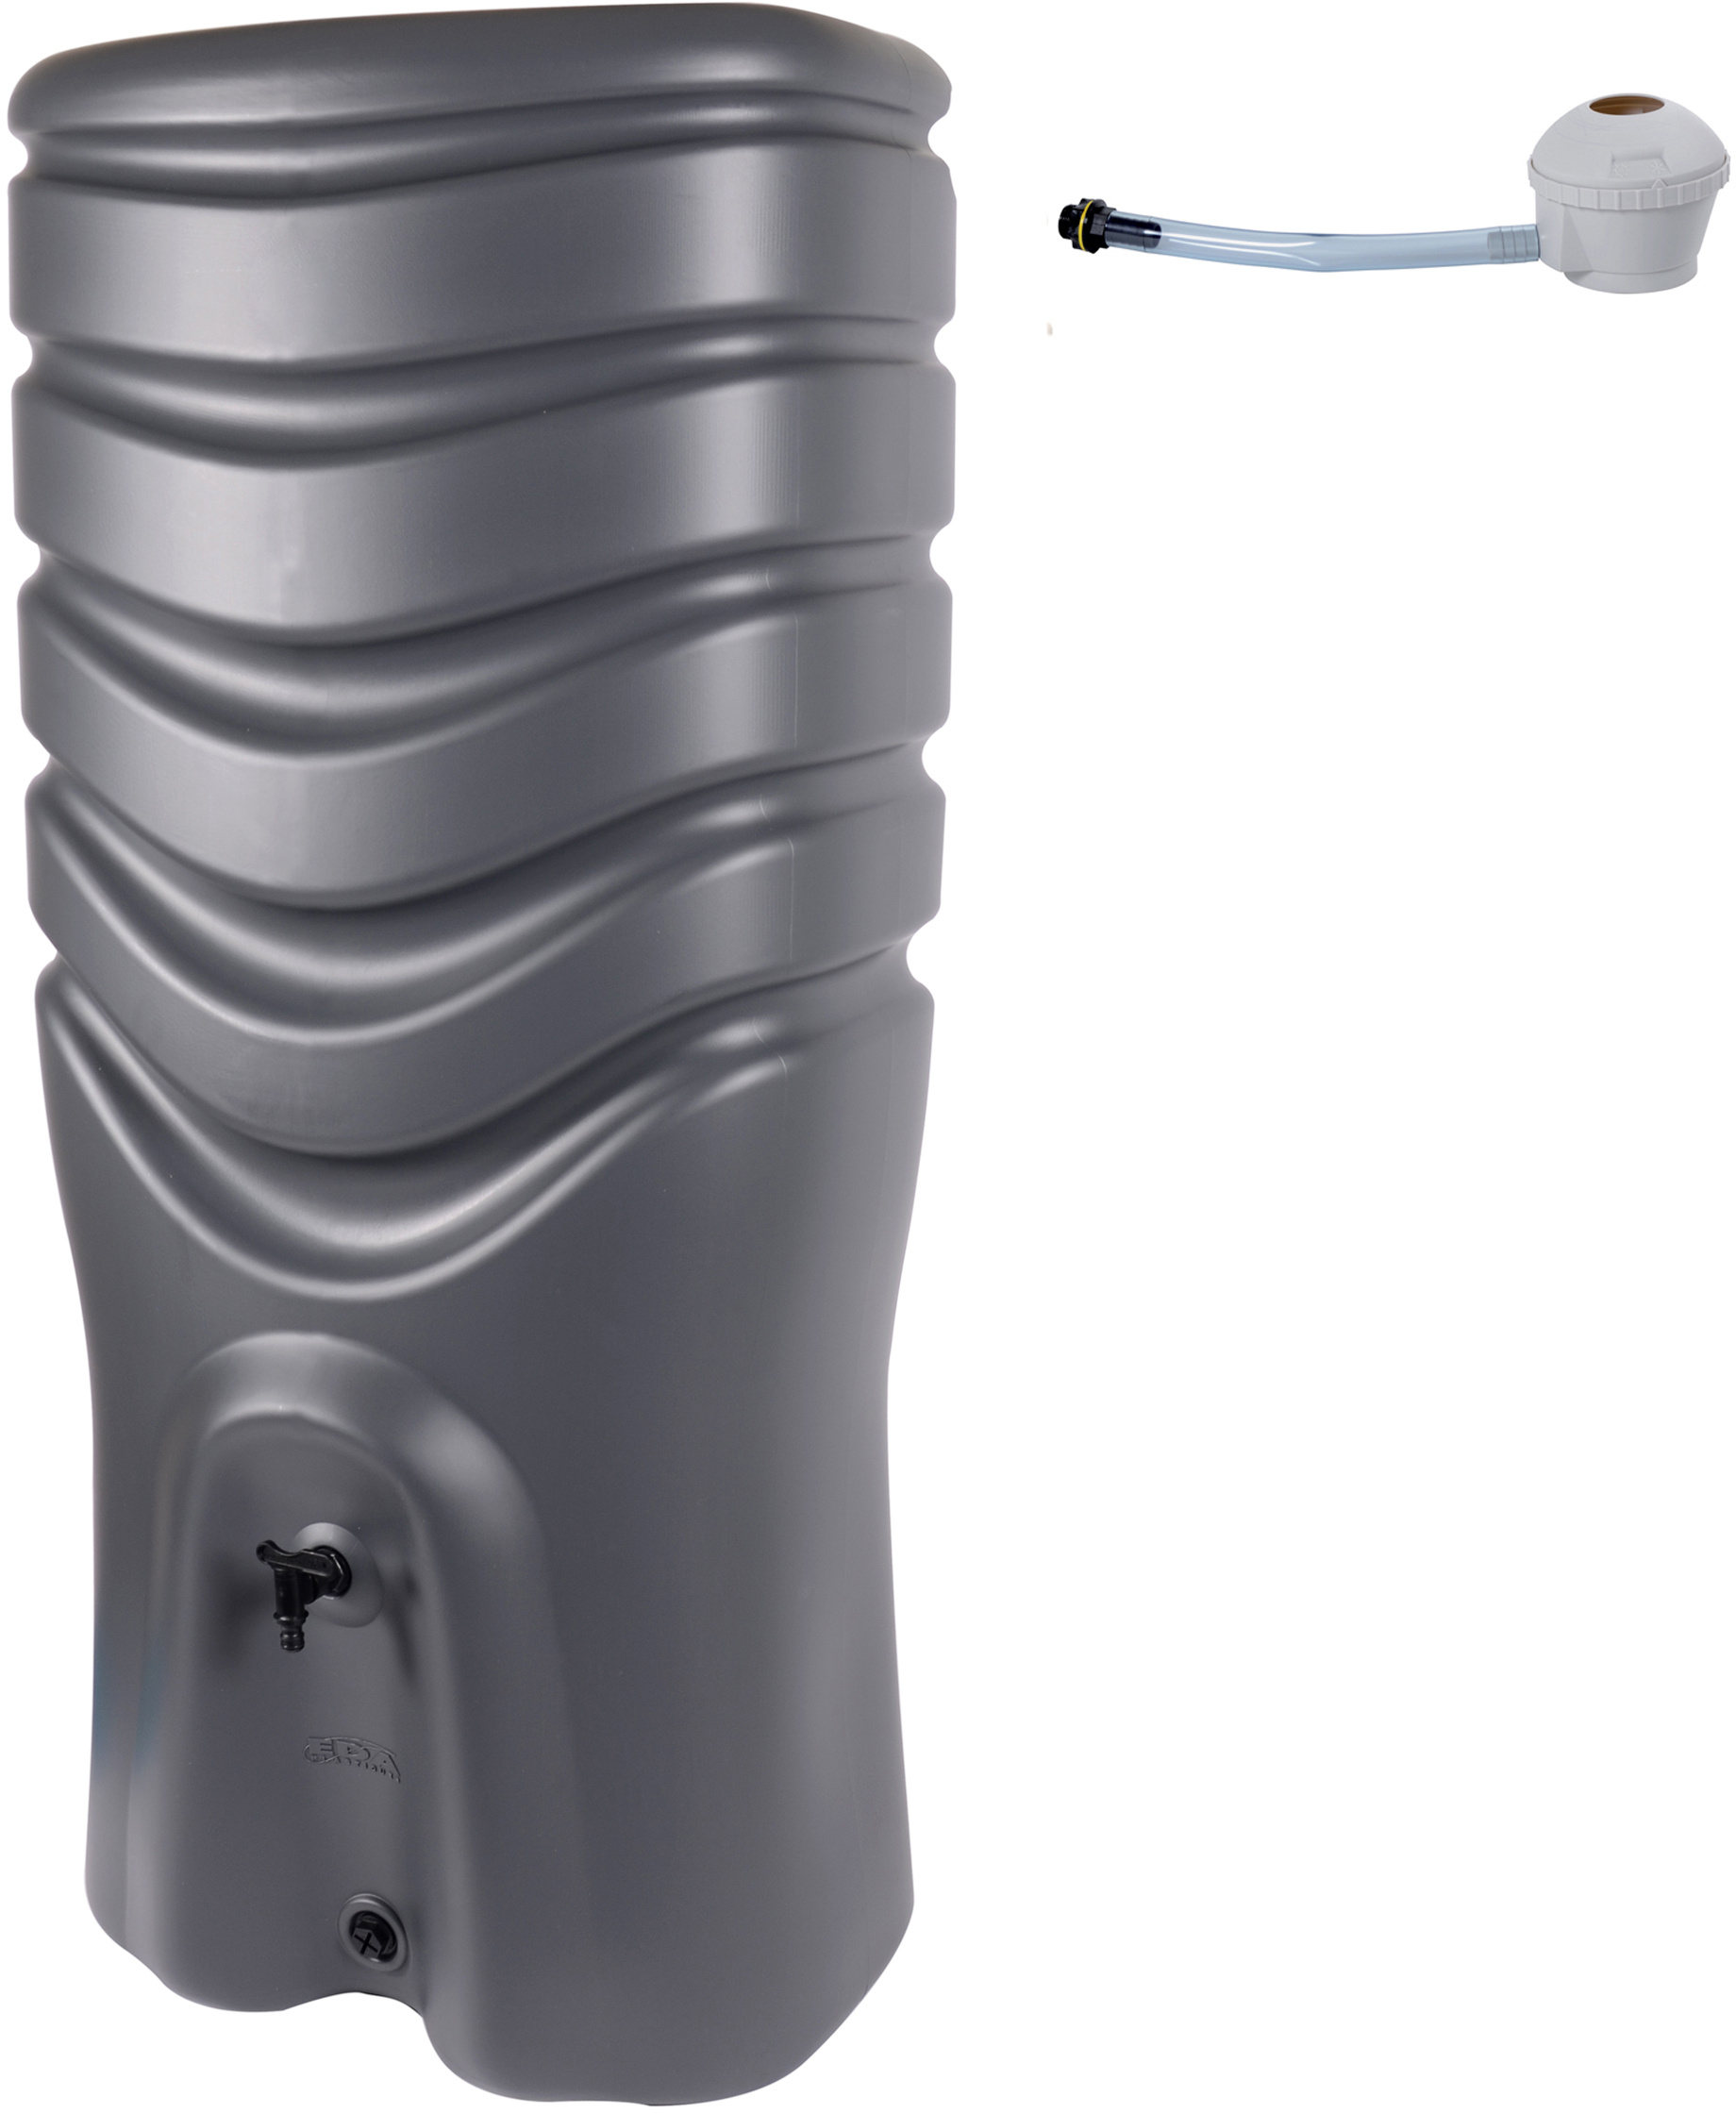 Récupérateur d'eau de pluie 550 L + kit collecteur robinet anthracite